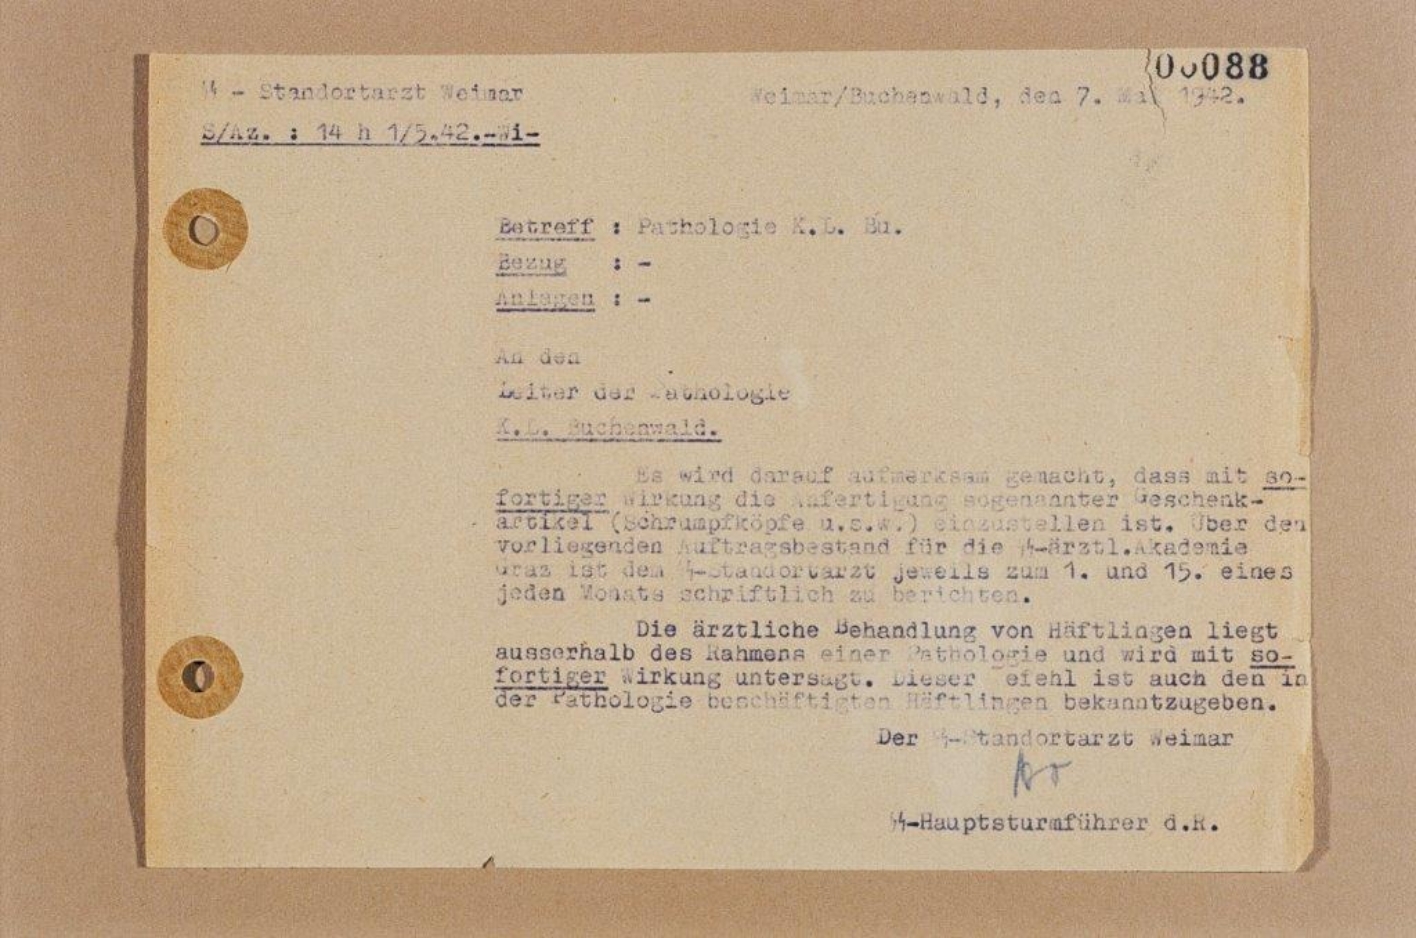 Zu sehen ist ein Dokument vom 1.5.1942 in dem der SS-Stadortarzt Hoven die Produktion von der "Geschenkartikeln" aus menschlichen Überresten untersagt. Zudem wird der Pathologie des KZ-Buchenwald die medizinische Behandlung von Häftlingen untersagt.